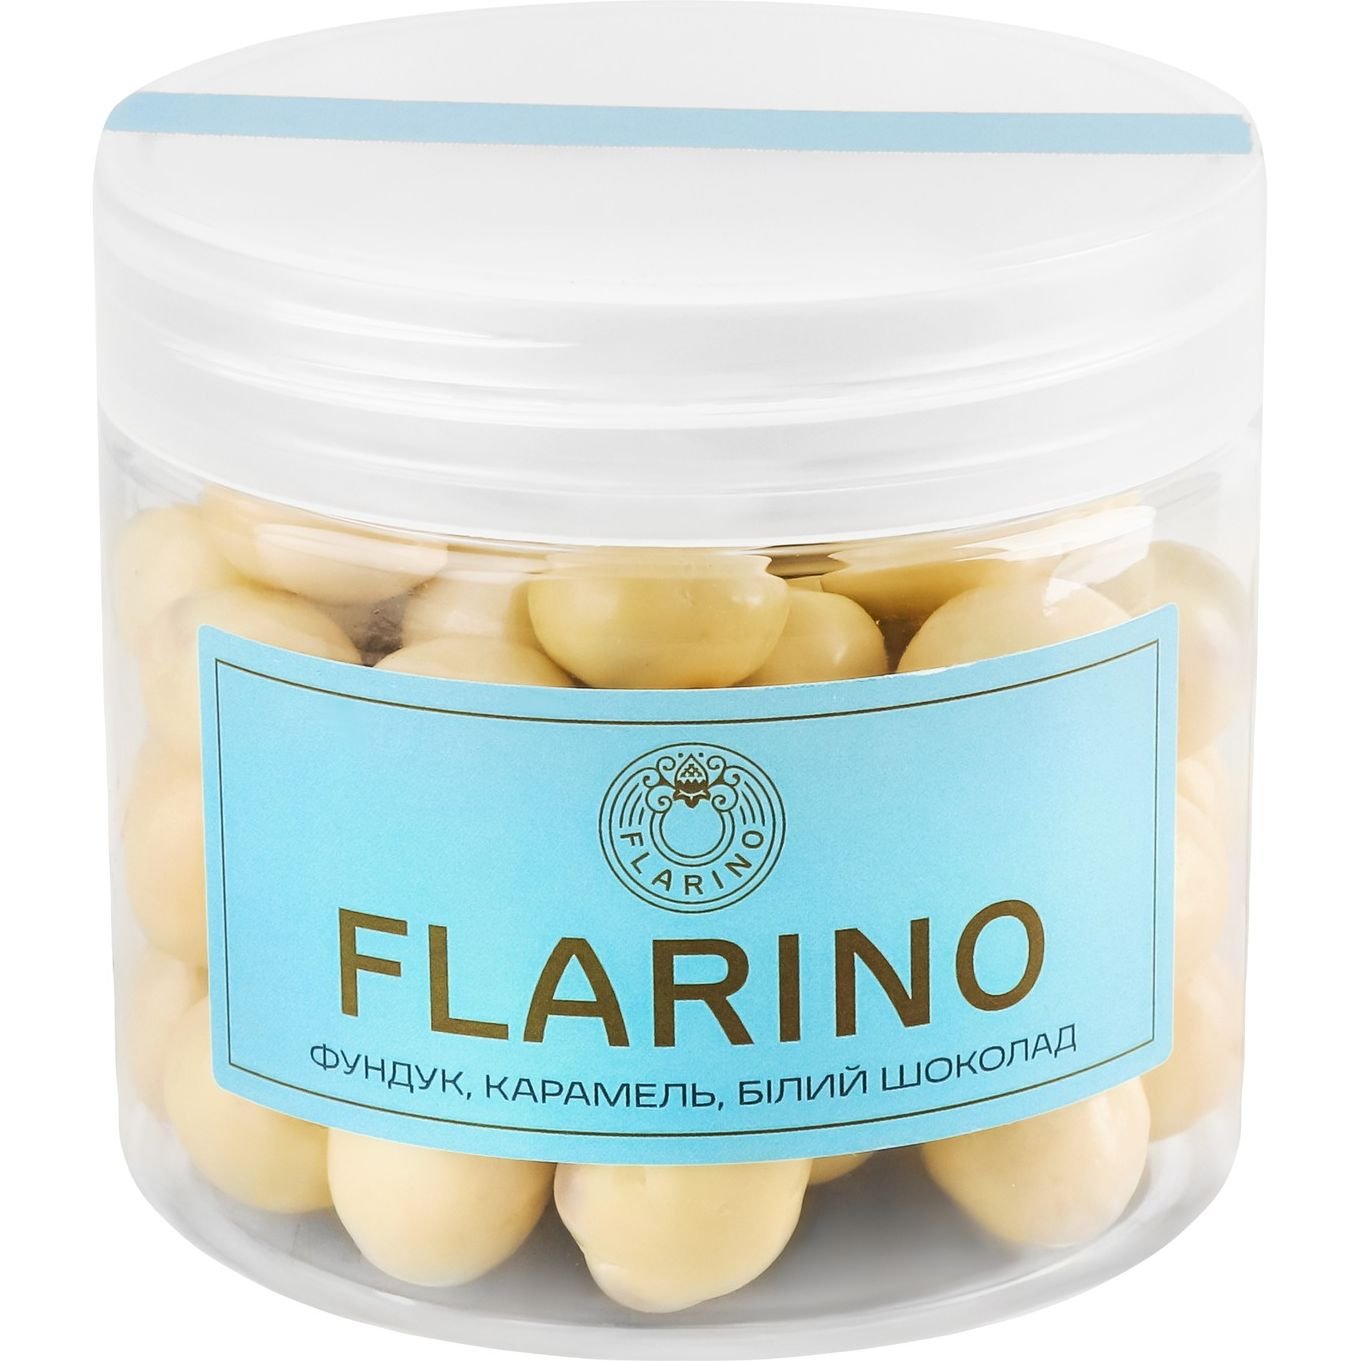 Фундук Flarino в карамелі покритий білим шоколадом, 180 г (924024) - фото 5